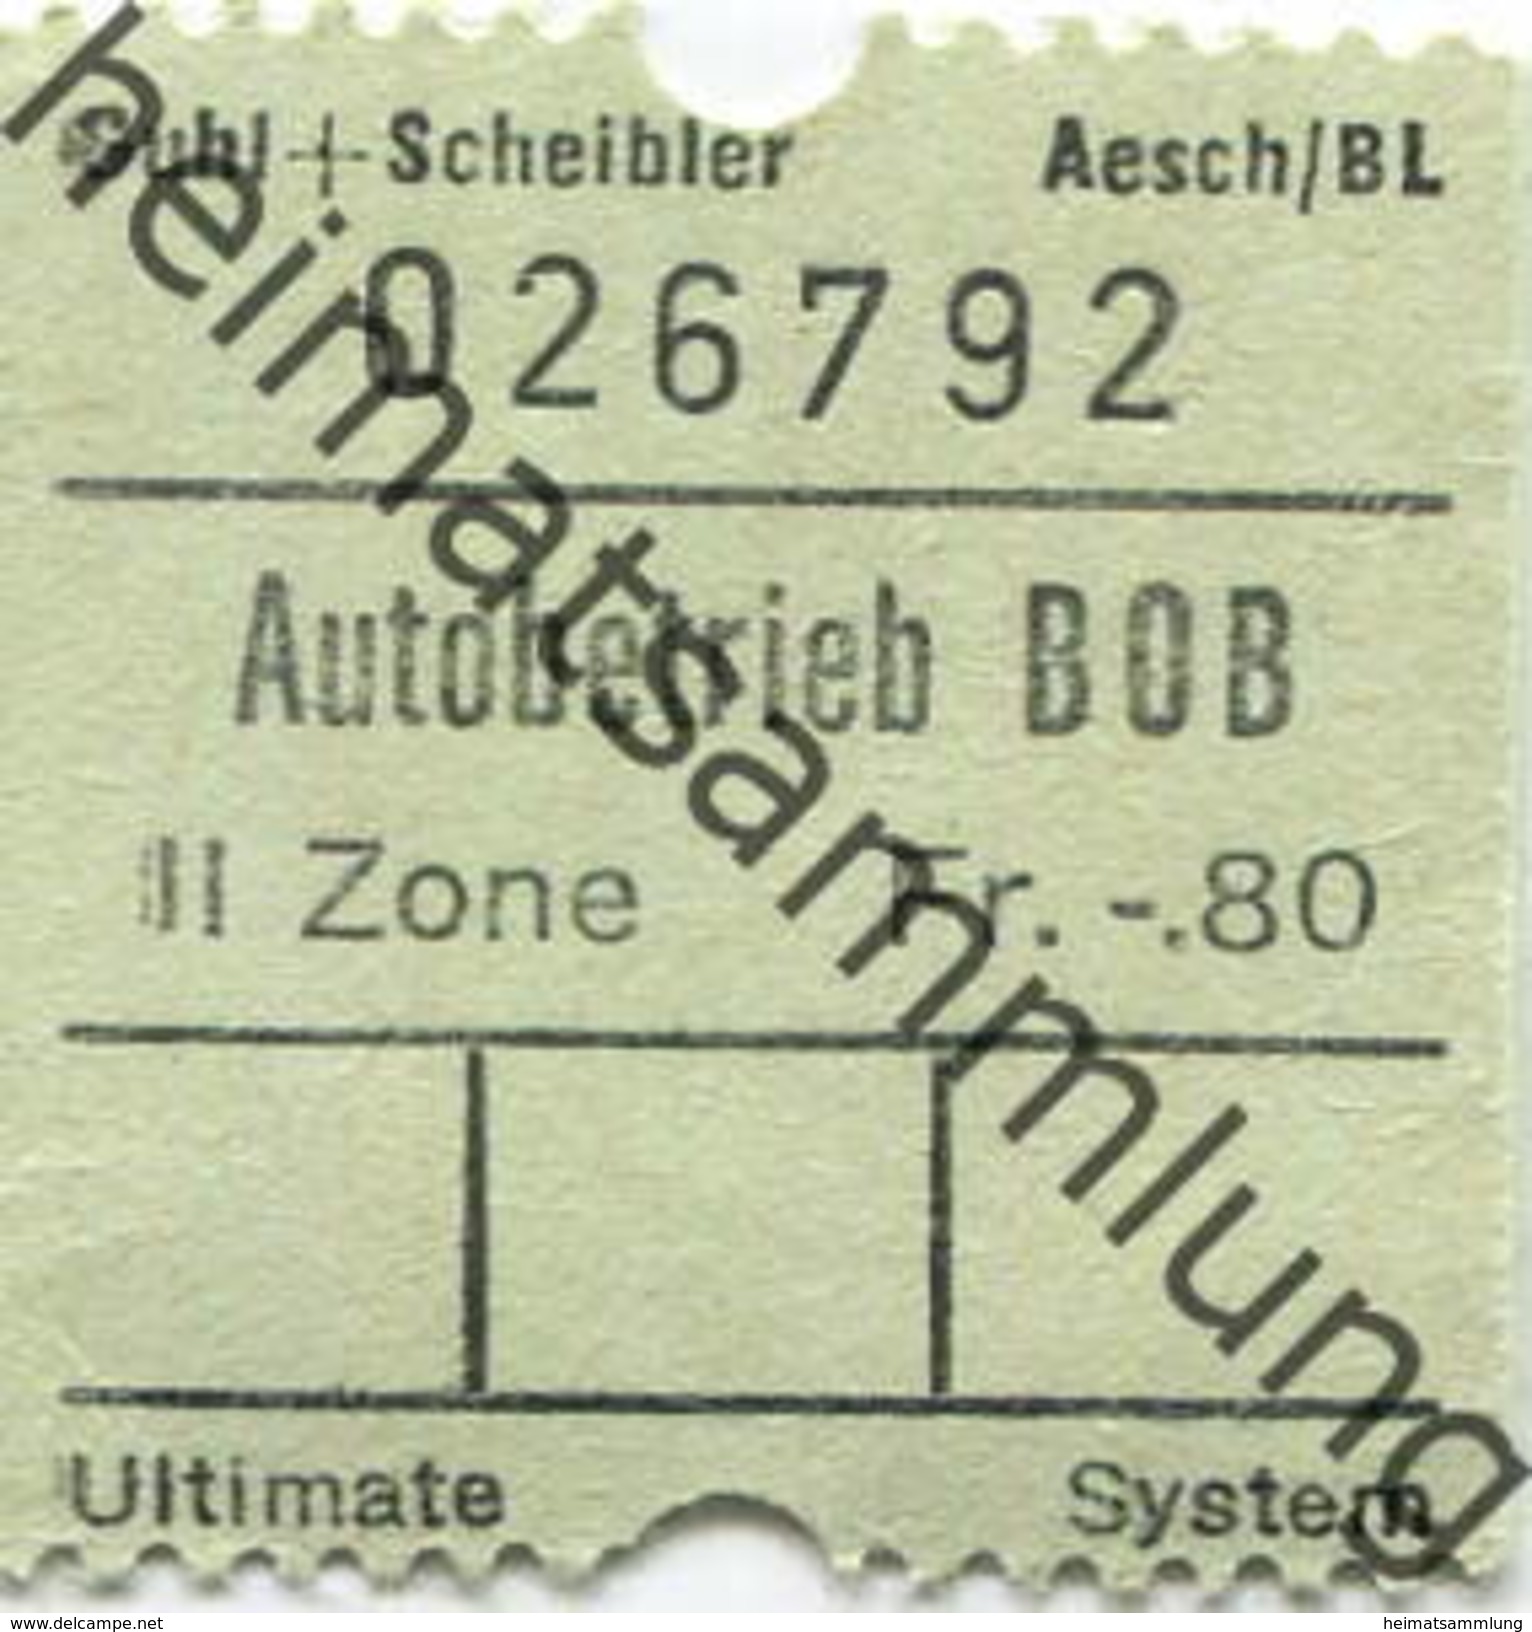 Schweiz - Berner-Oberland-Bahnen - Autobusbetrieb BOB - Fahrschein - Europe